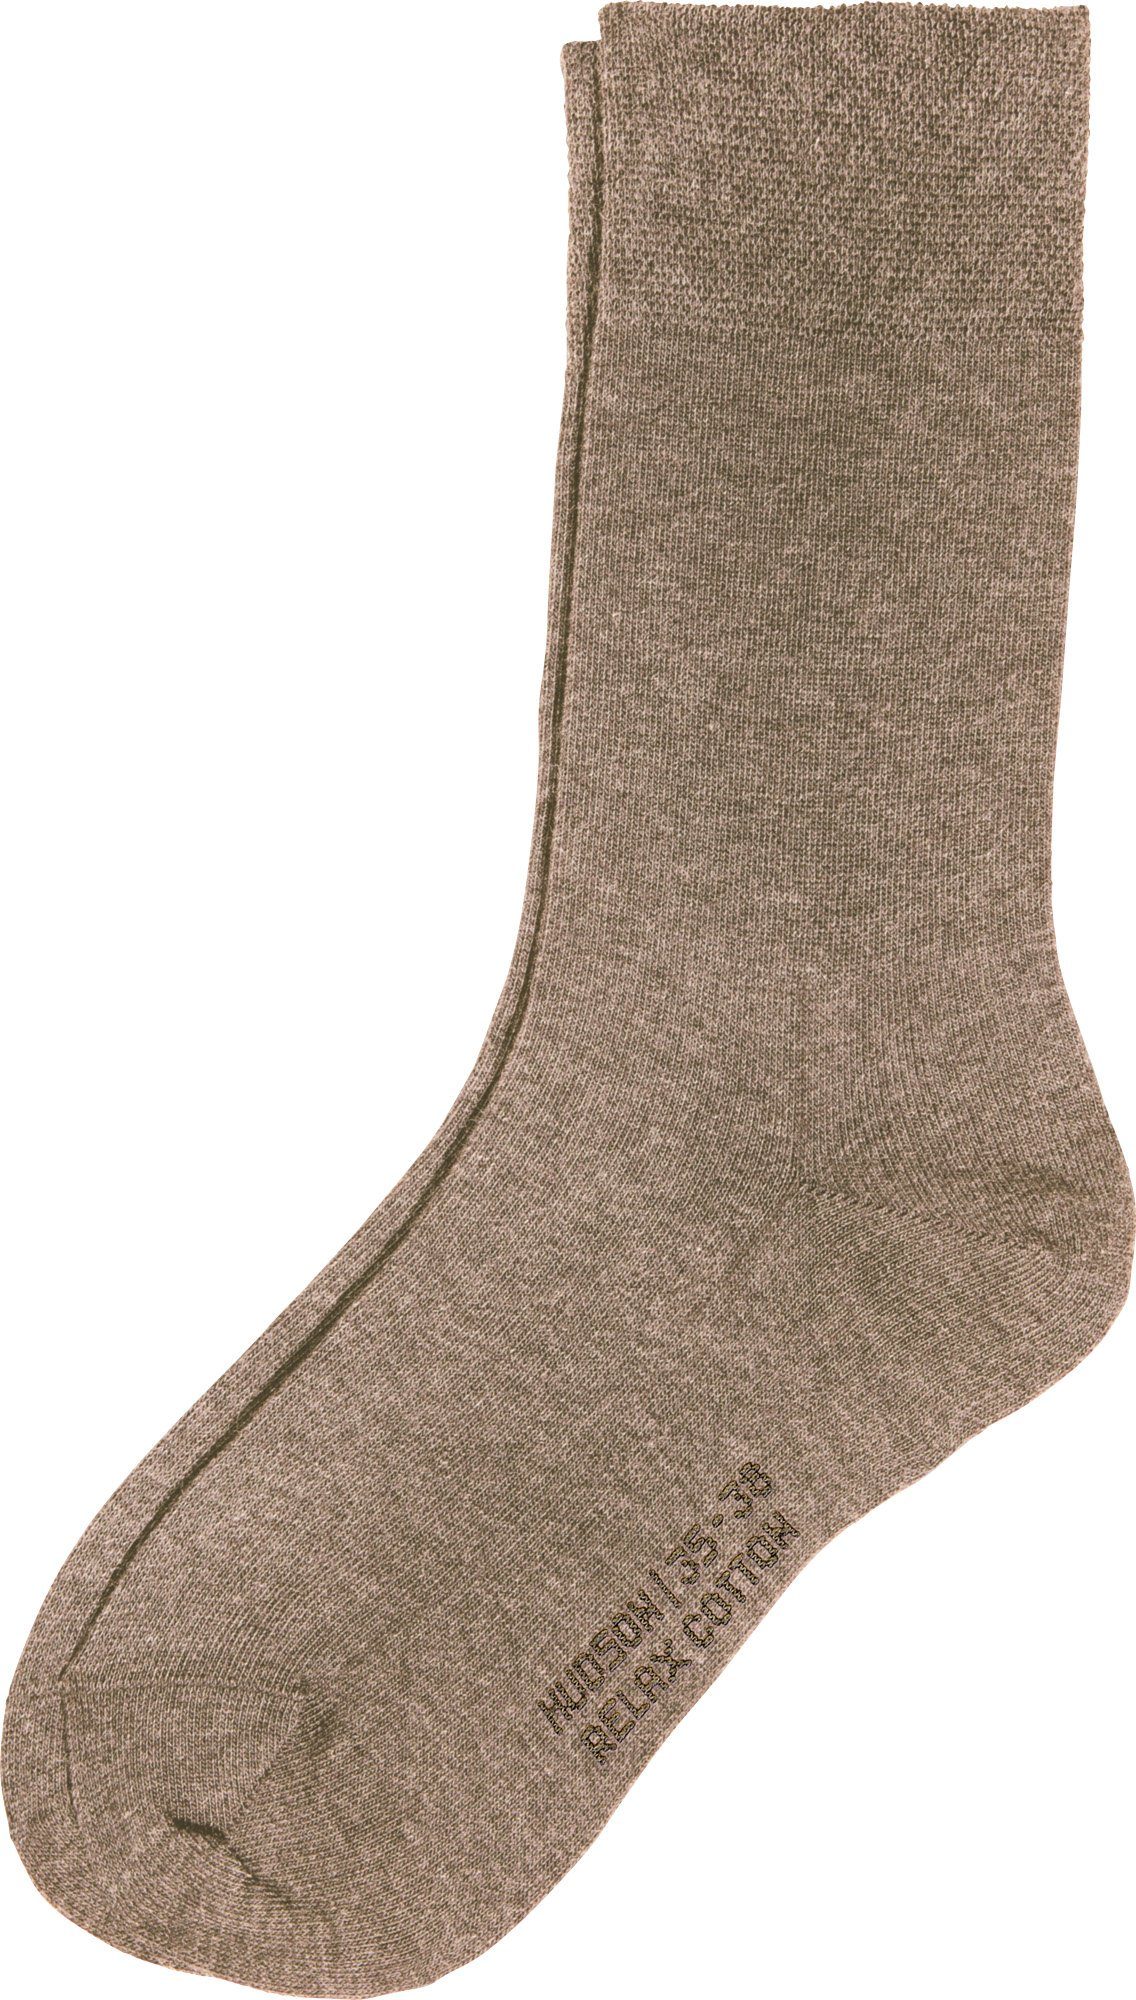 Softbund mit taupe Socken Damen-Socken Uni 1 meliert Hudson Paar